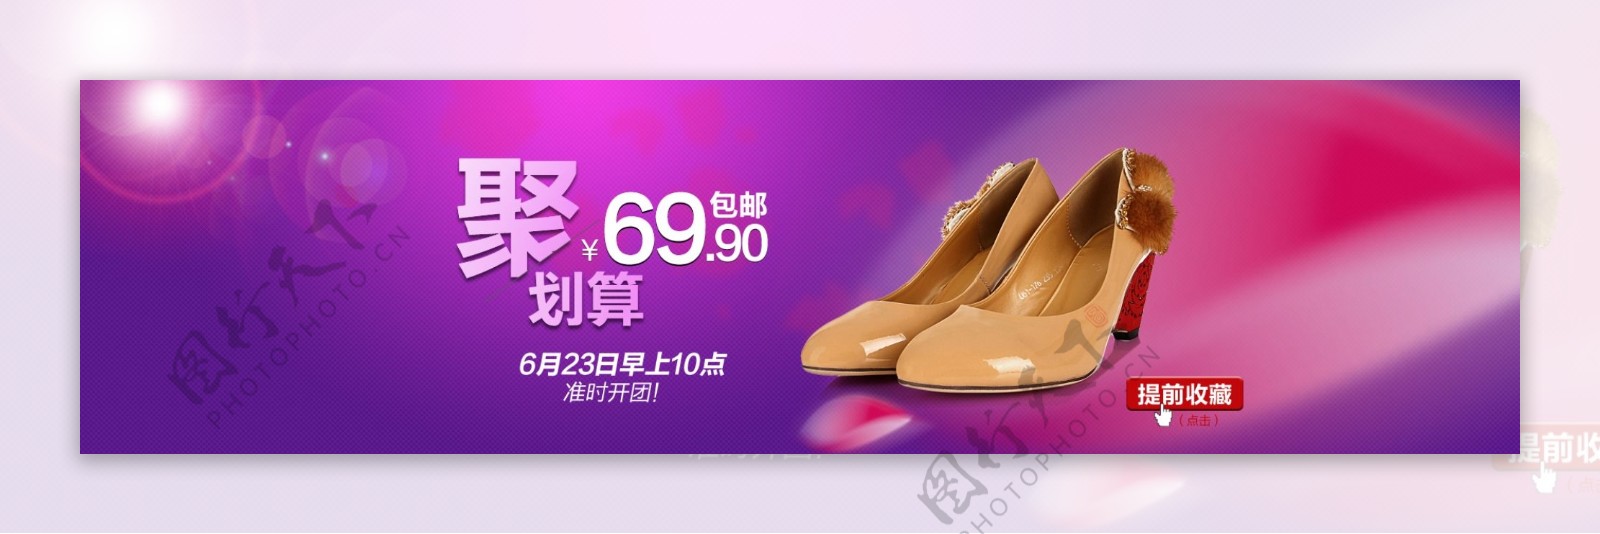 淘宝时尚女鞋广告横幅